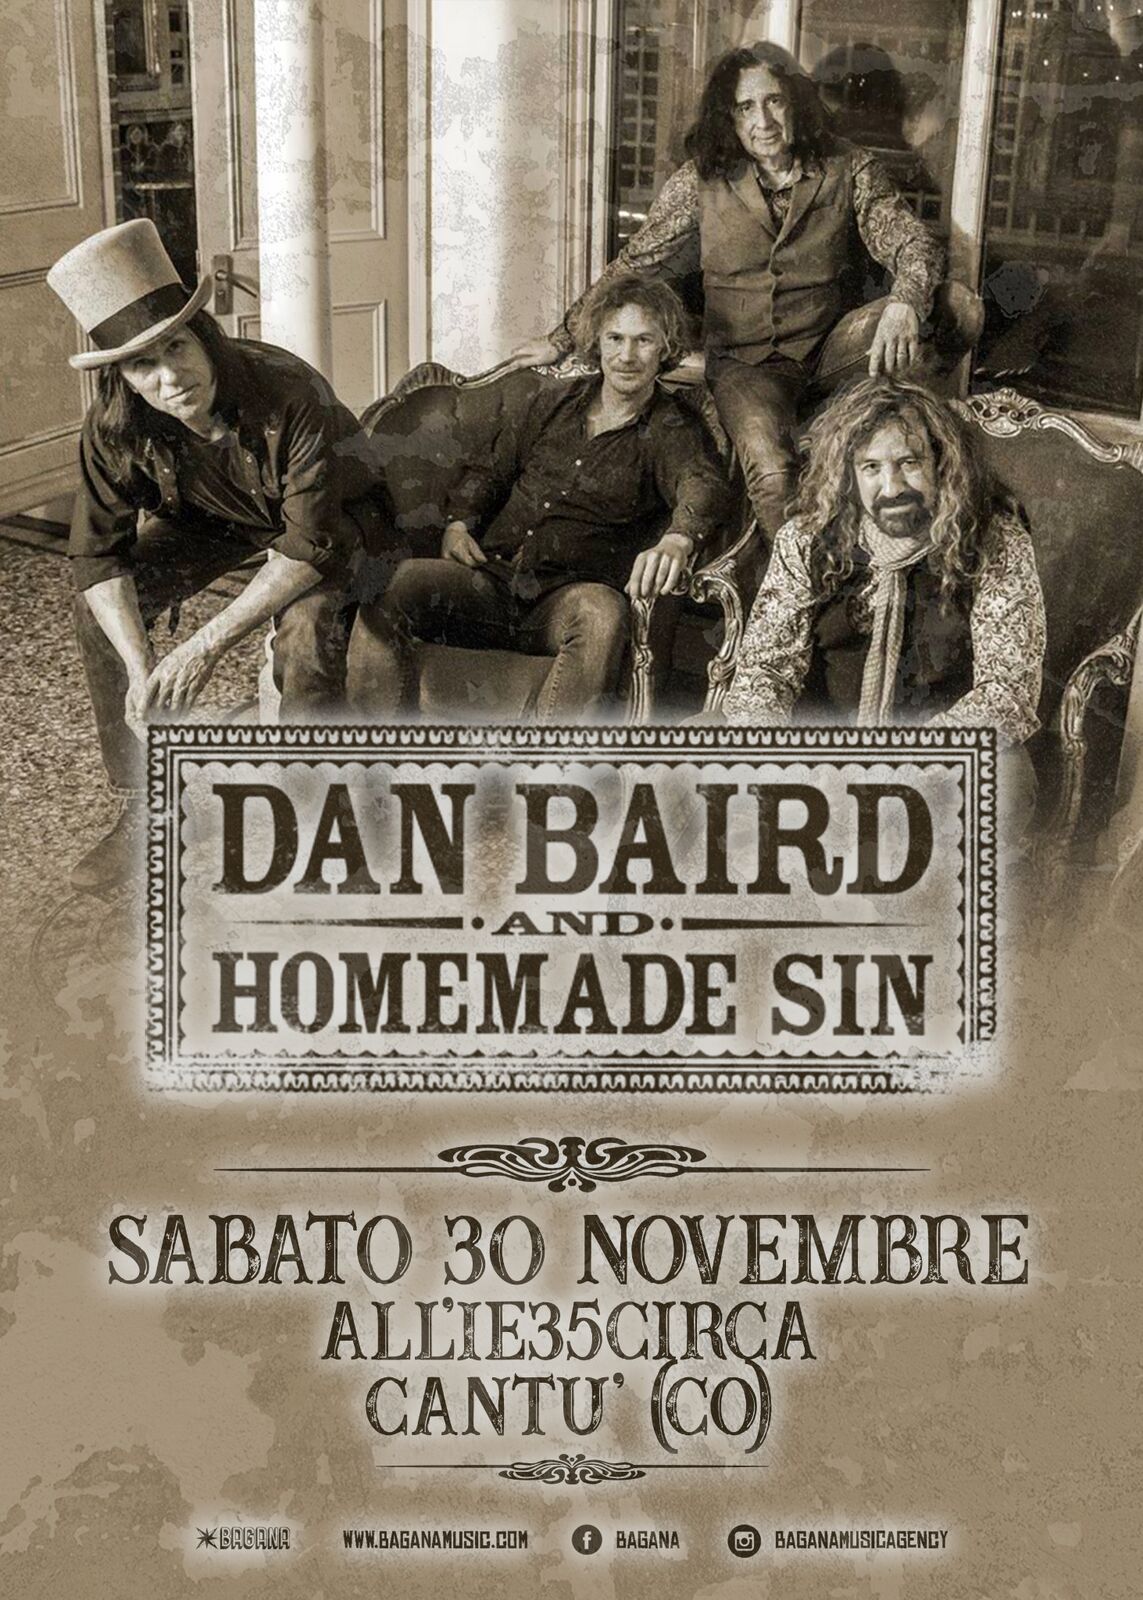 Dan Baird And Homemade Sin 30 Novembre 2019Cantù